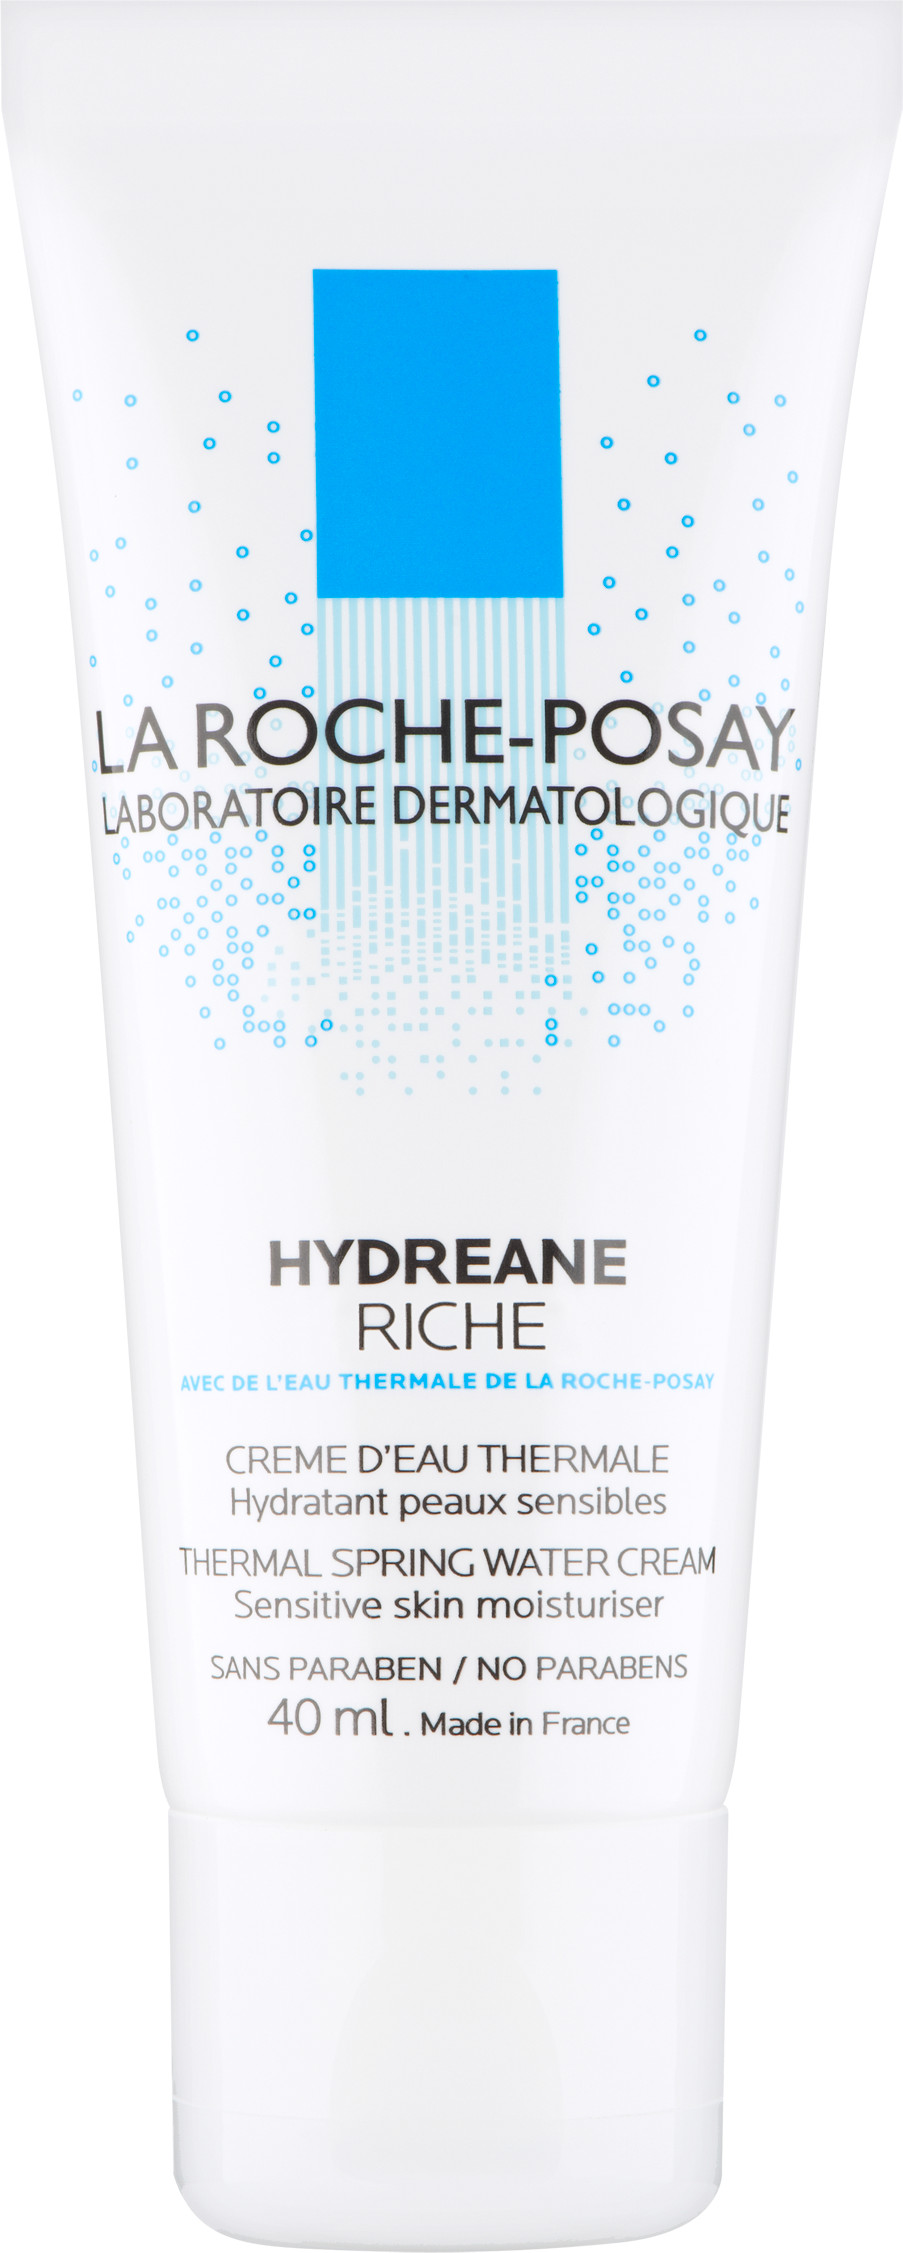 La Roche-Posay Hydreane Riche